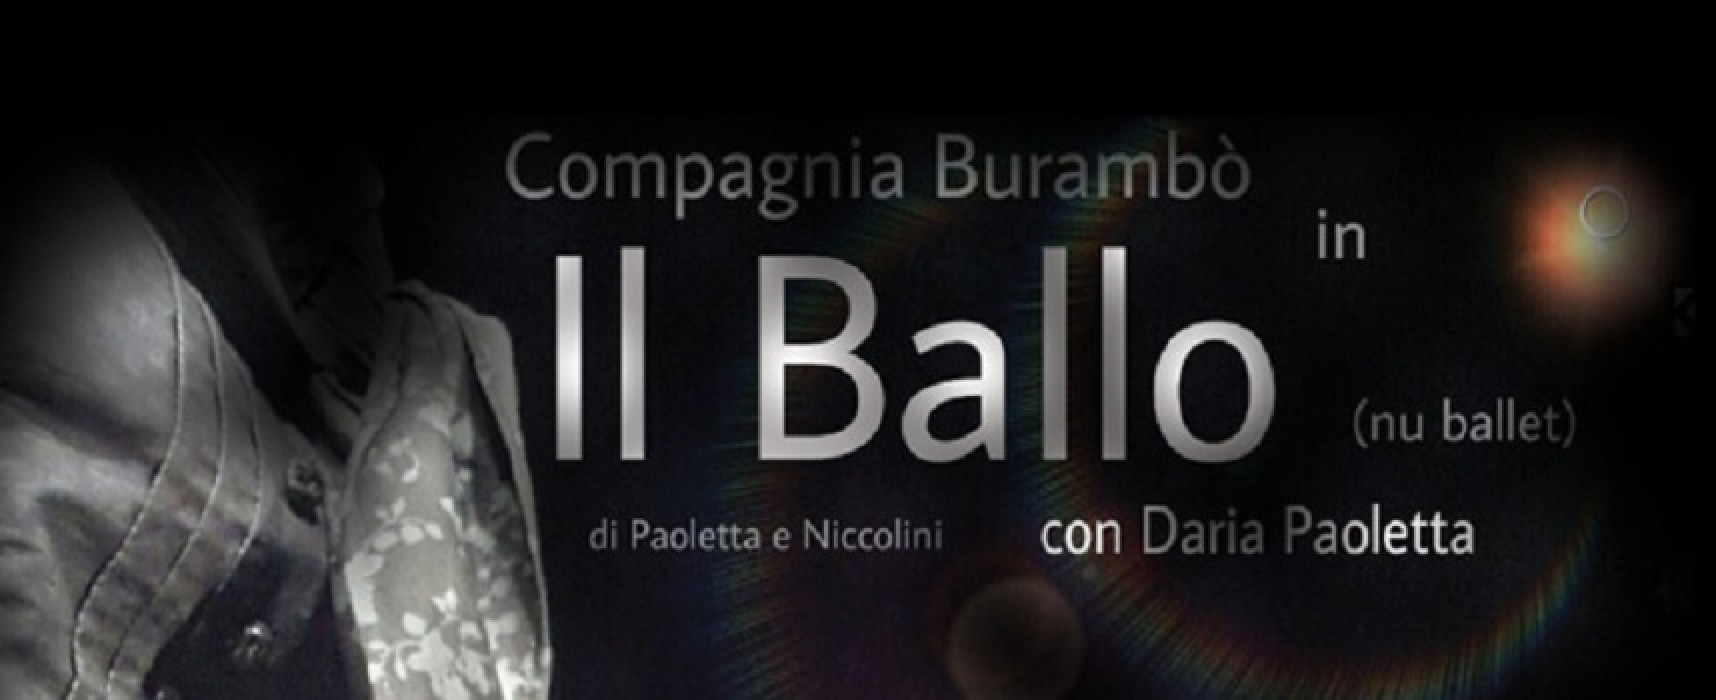 Effetti Collaterali, domenica sera andrà in scena “Il Ballo” con Daria Paoletta